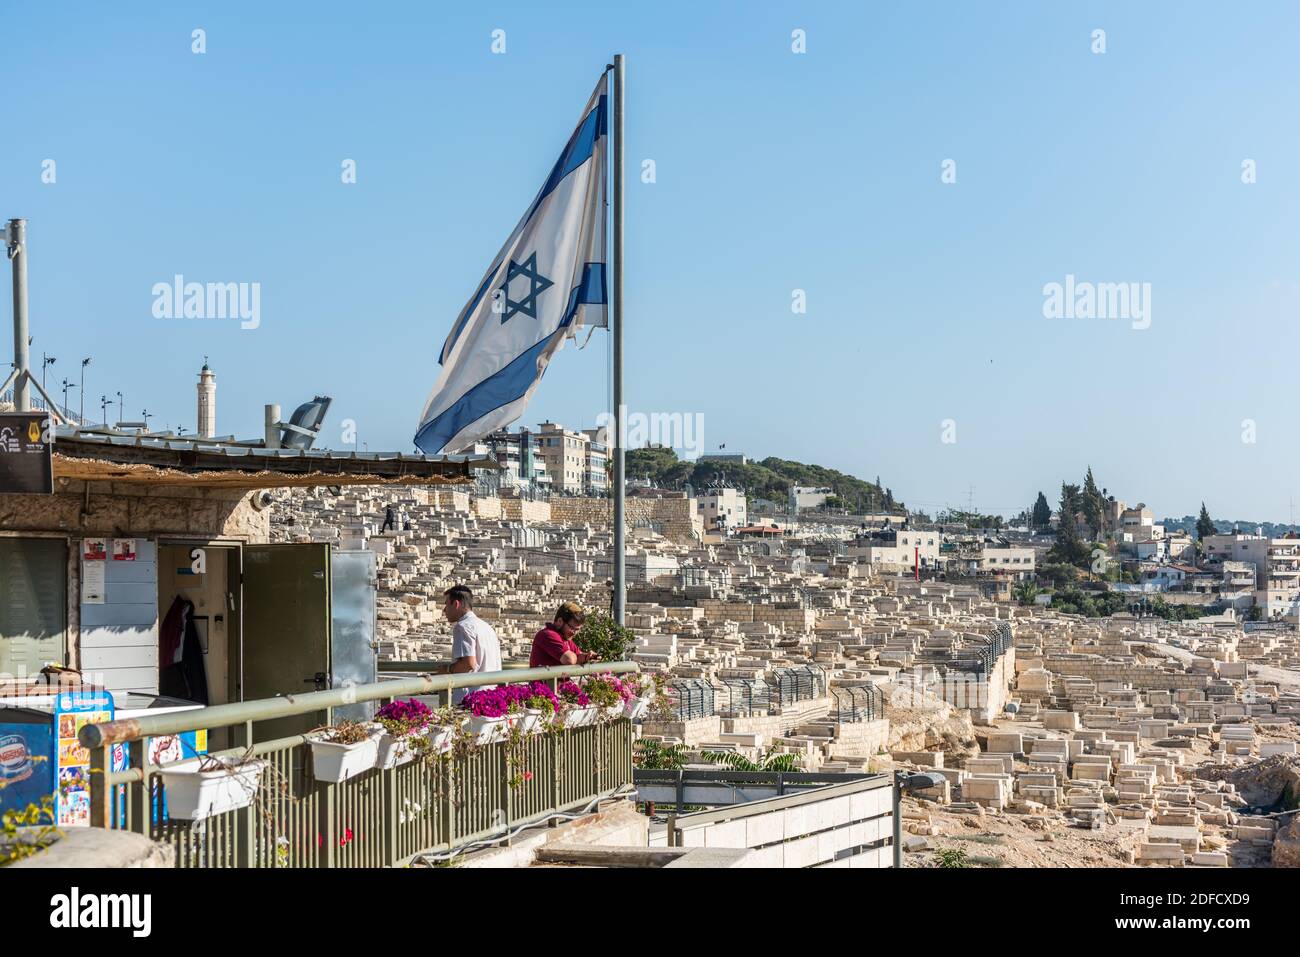 Touristen-Informationszentrum mit israelischer Nationalflagge im Kidron-Tal oder King's Valley, auf der Ostseite der Altstadt von Jerusalem, Israel Stockfoto